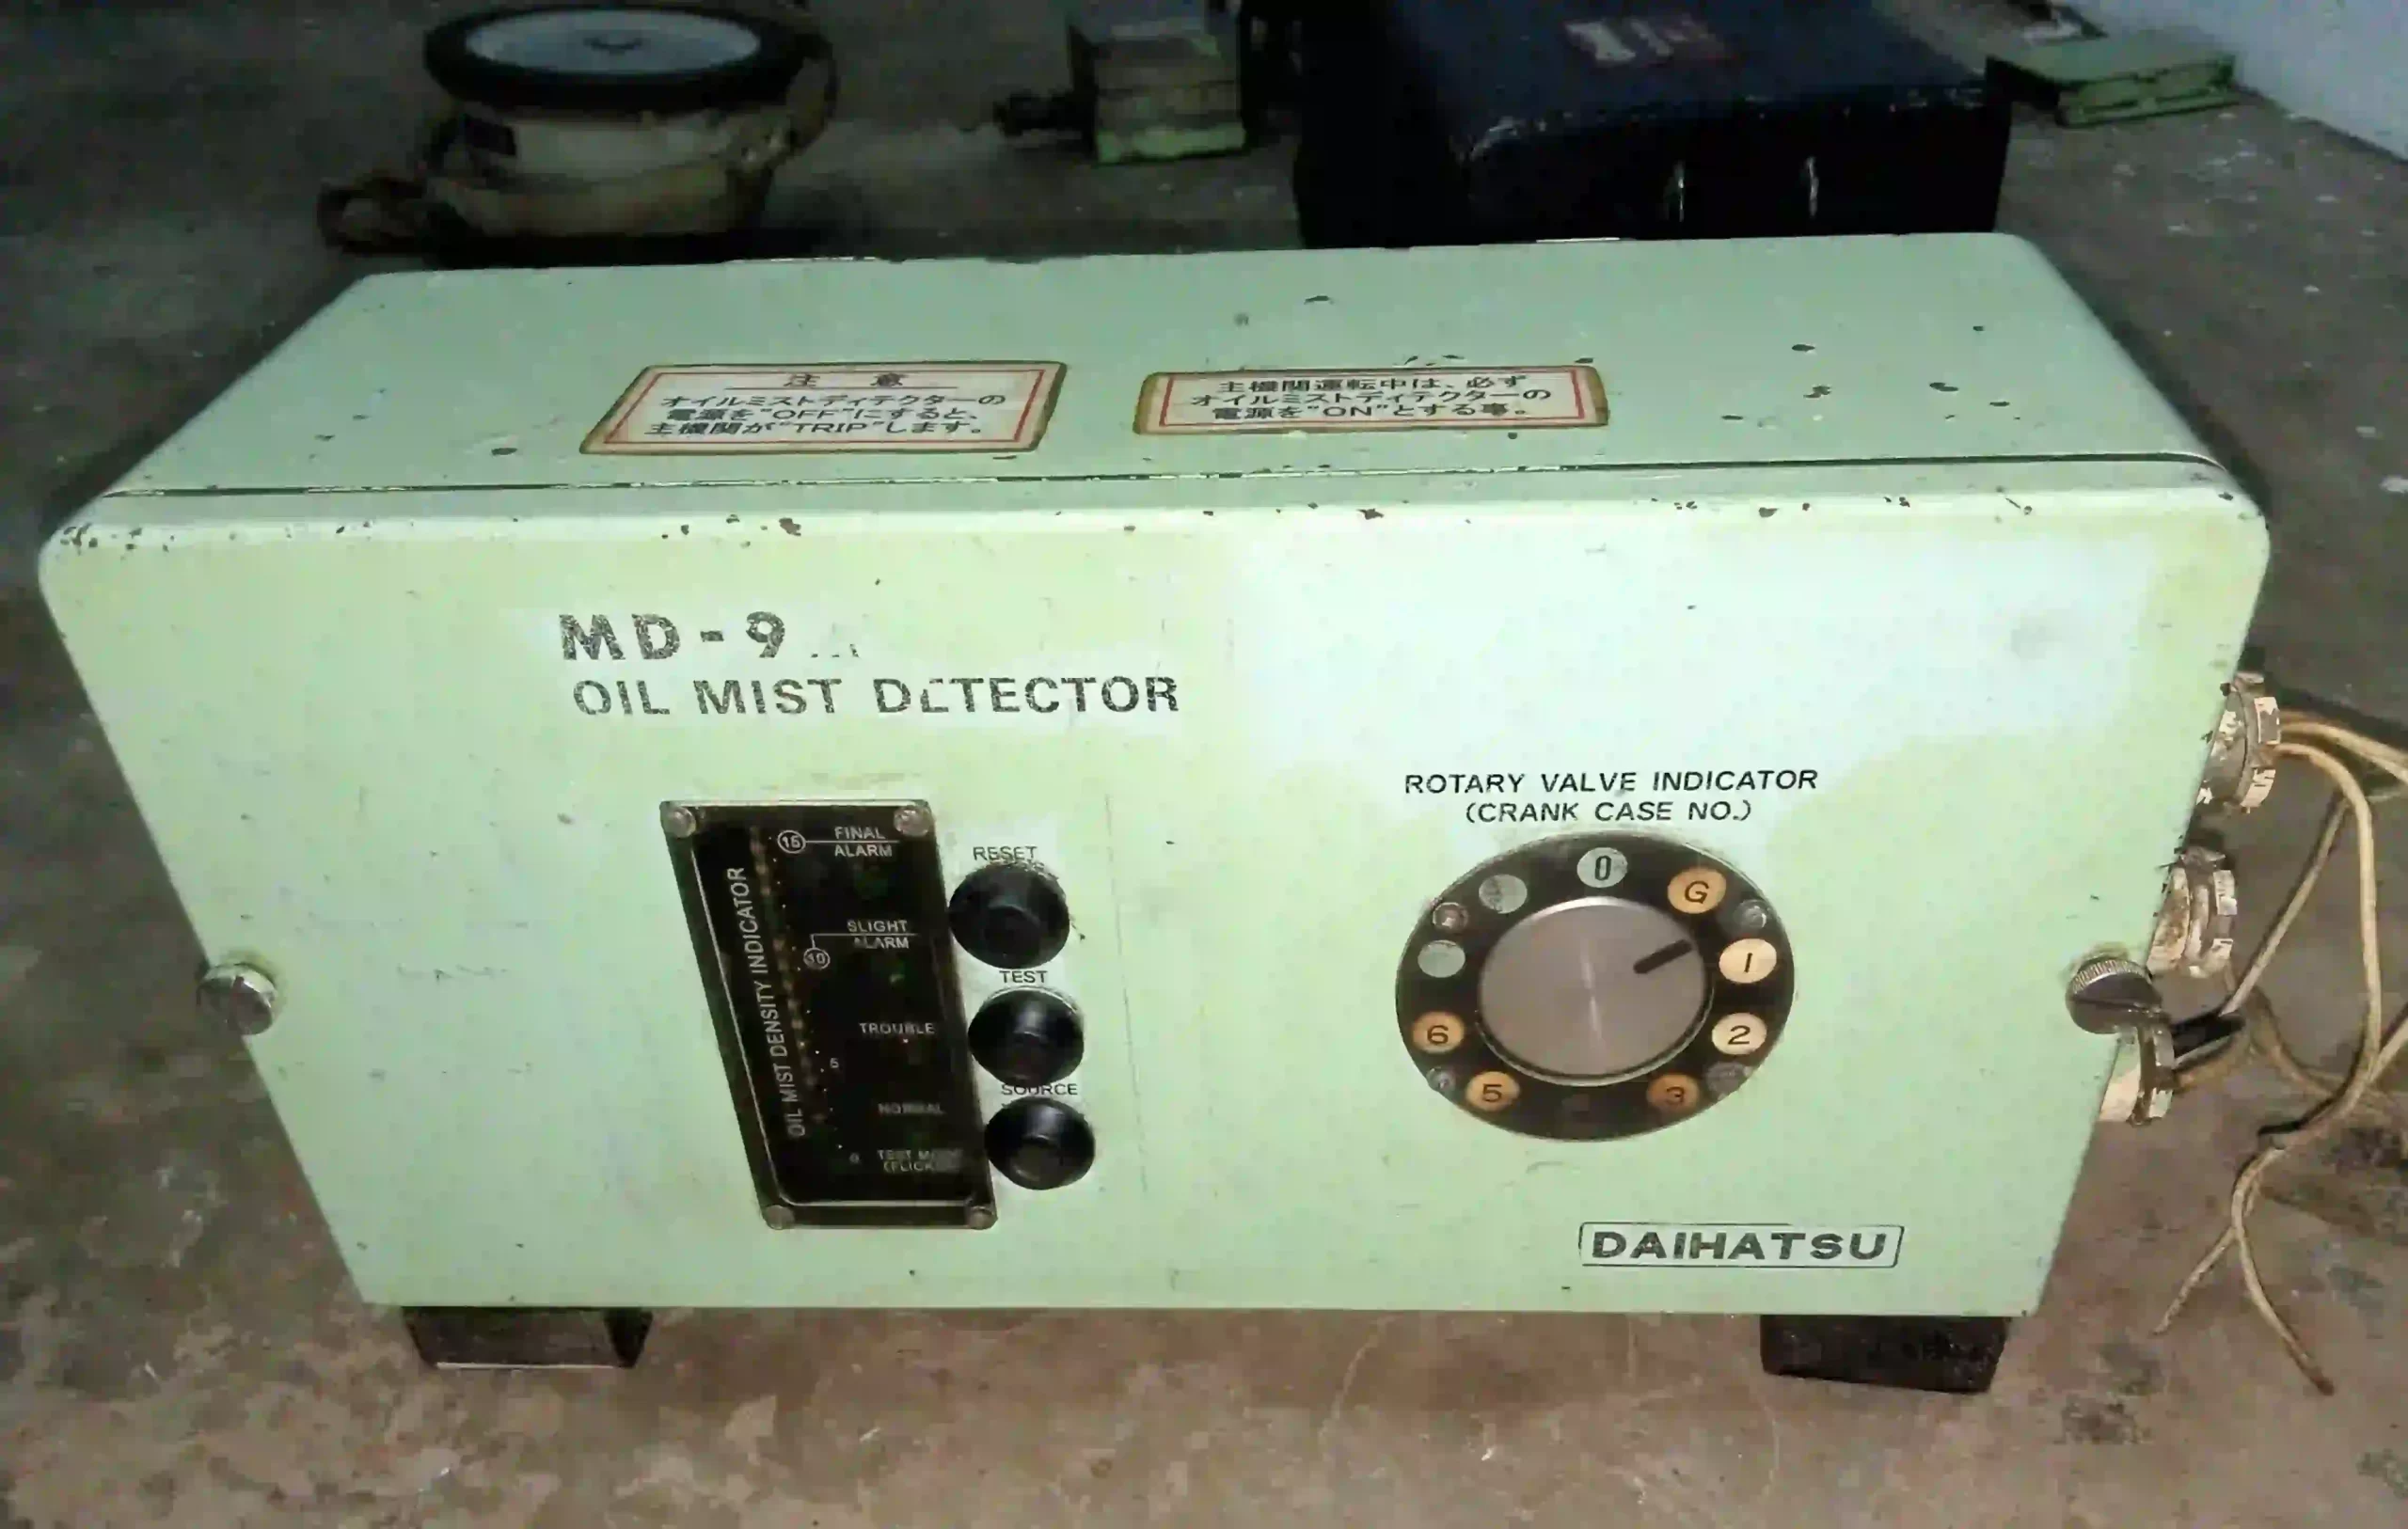 DAIHATSU MD-9M MD-14M OMD-21 MD-SX MD-SXII 15 ppm Bilge Alarm Monitor Oil Mist Detector, PB